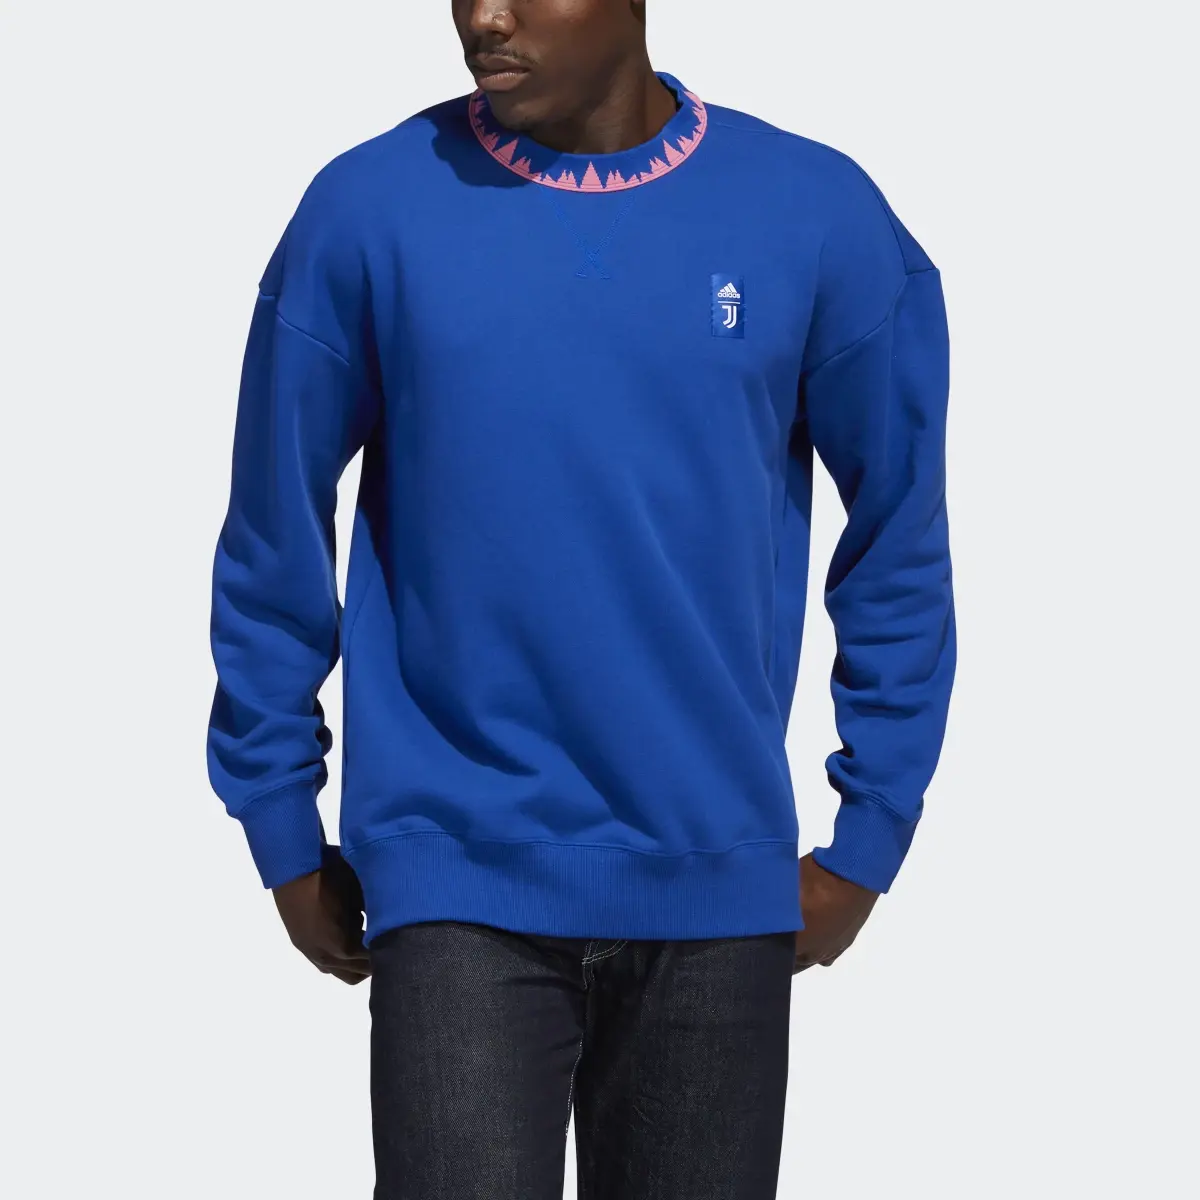 Adidas Sweatshirt Lifestyler da Juventus. 1